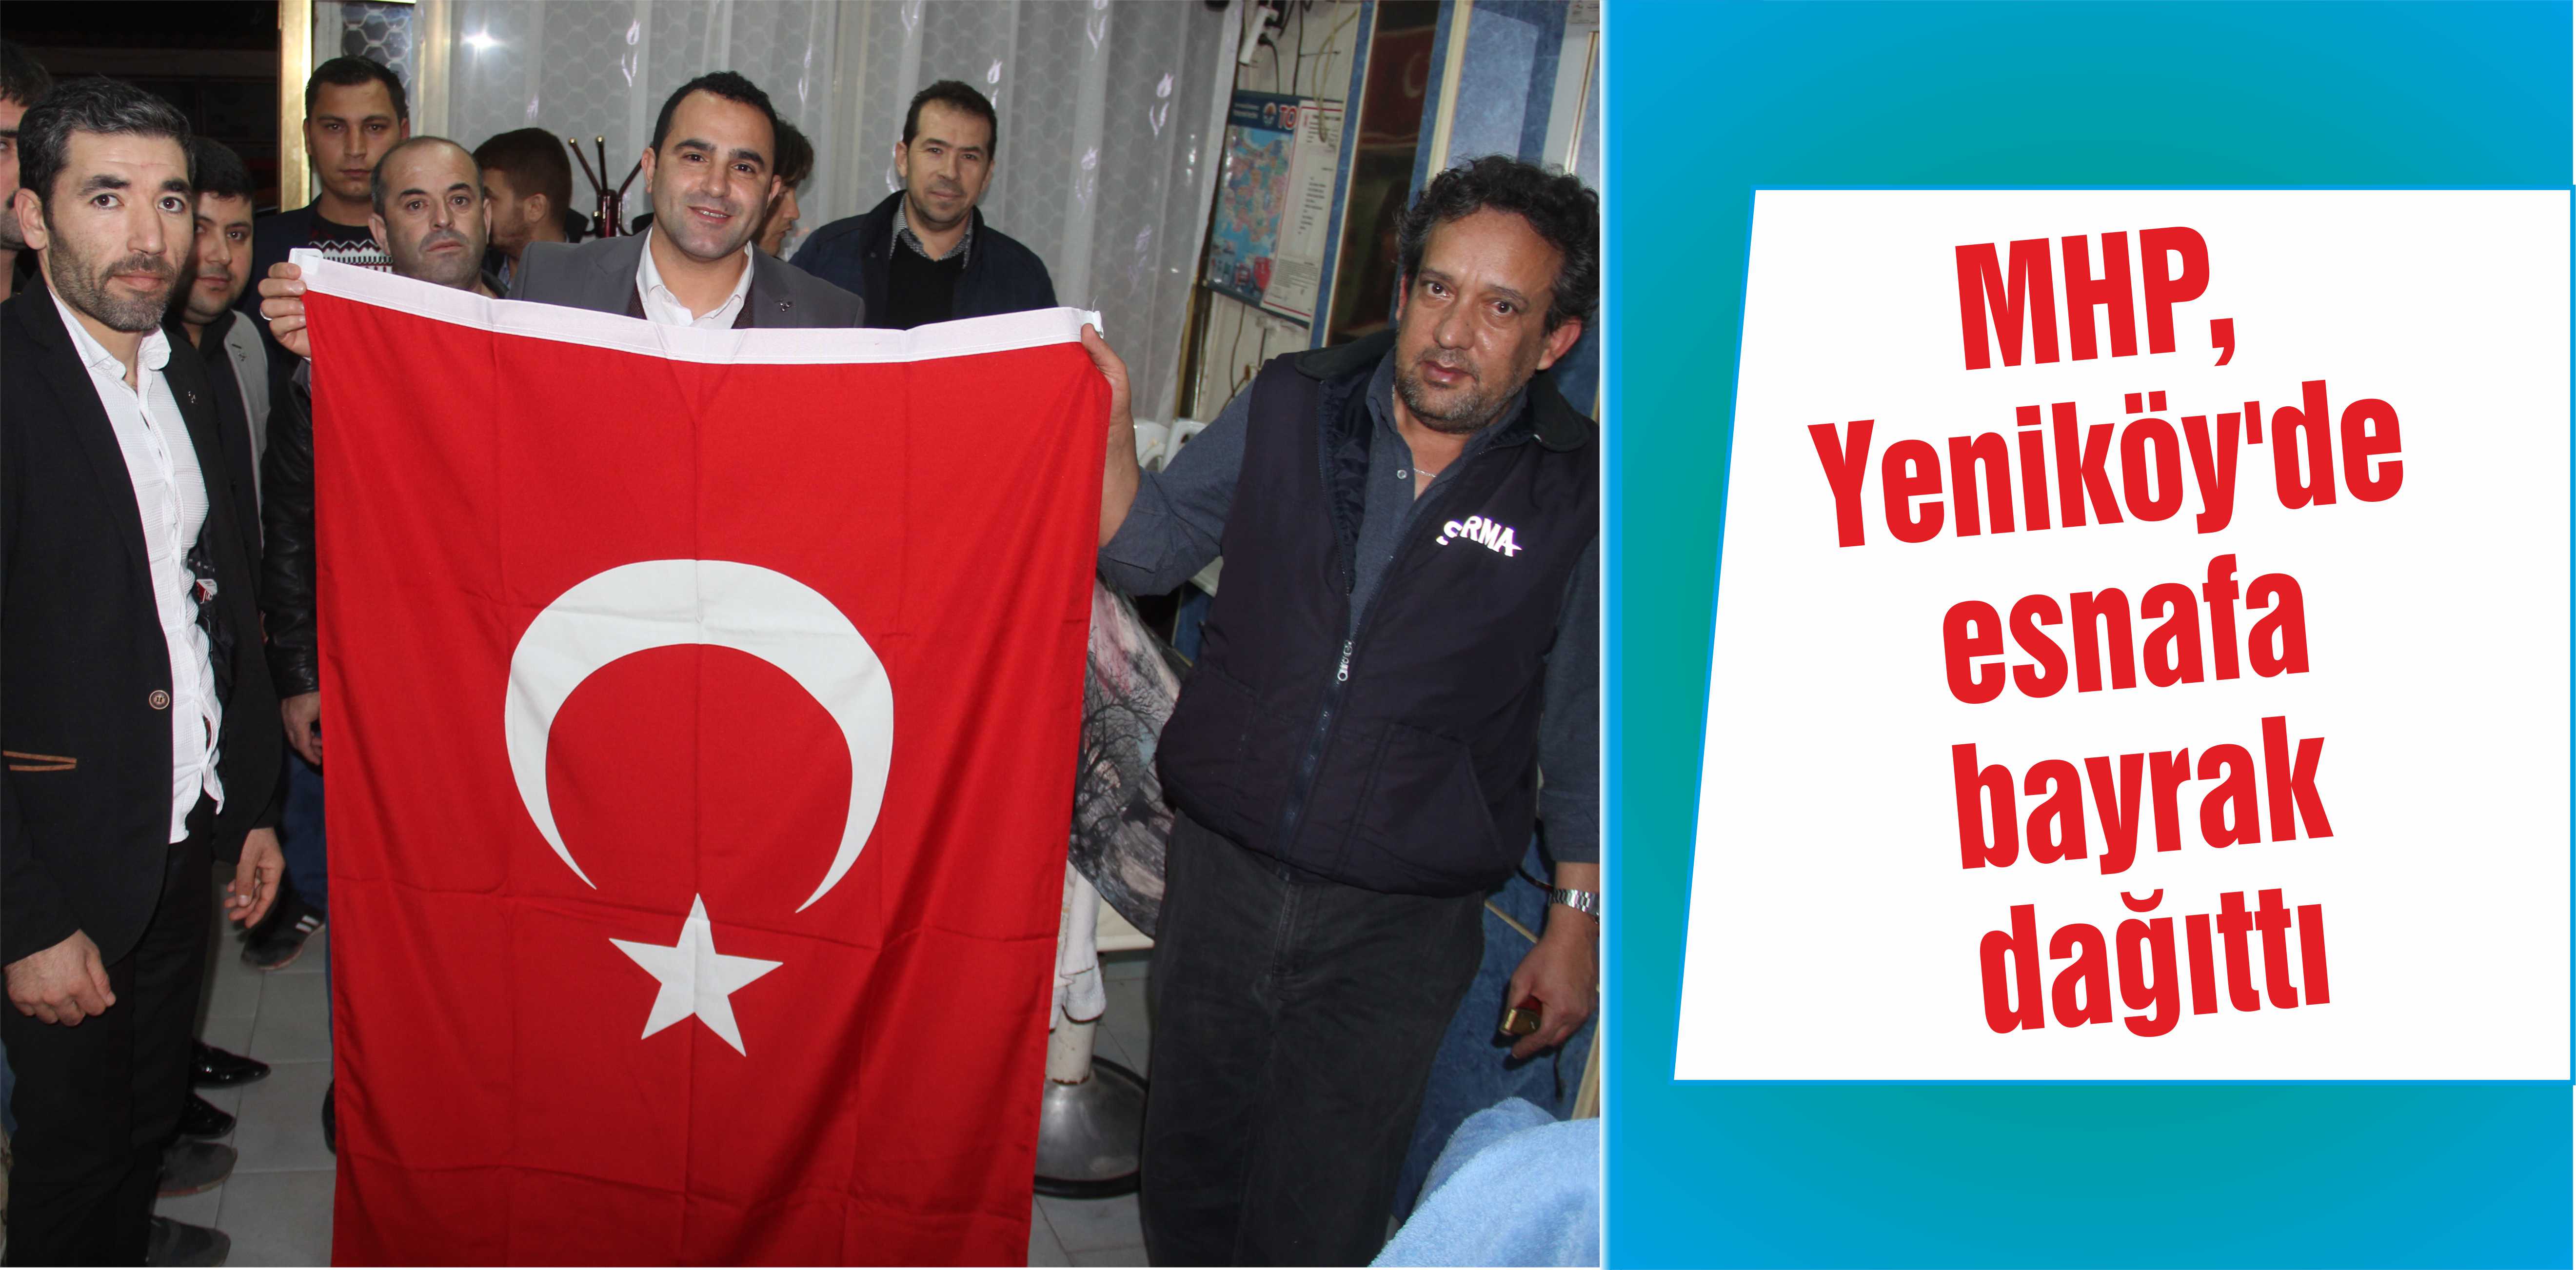 MHP, Yeniköy’de esnafa bayrak dağıttı